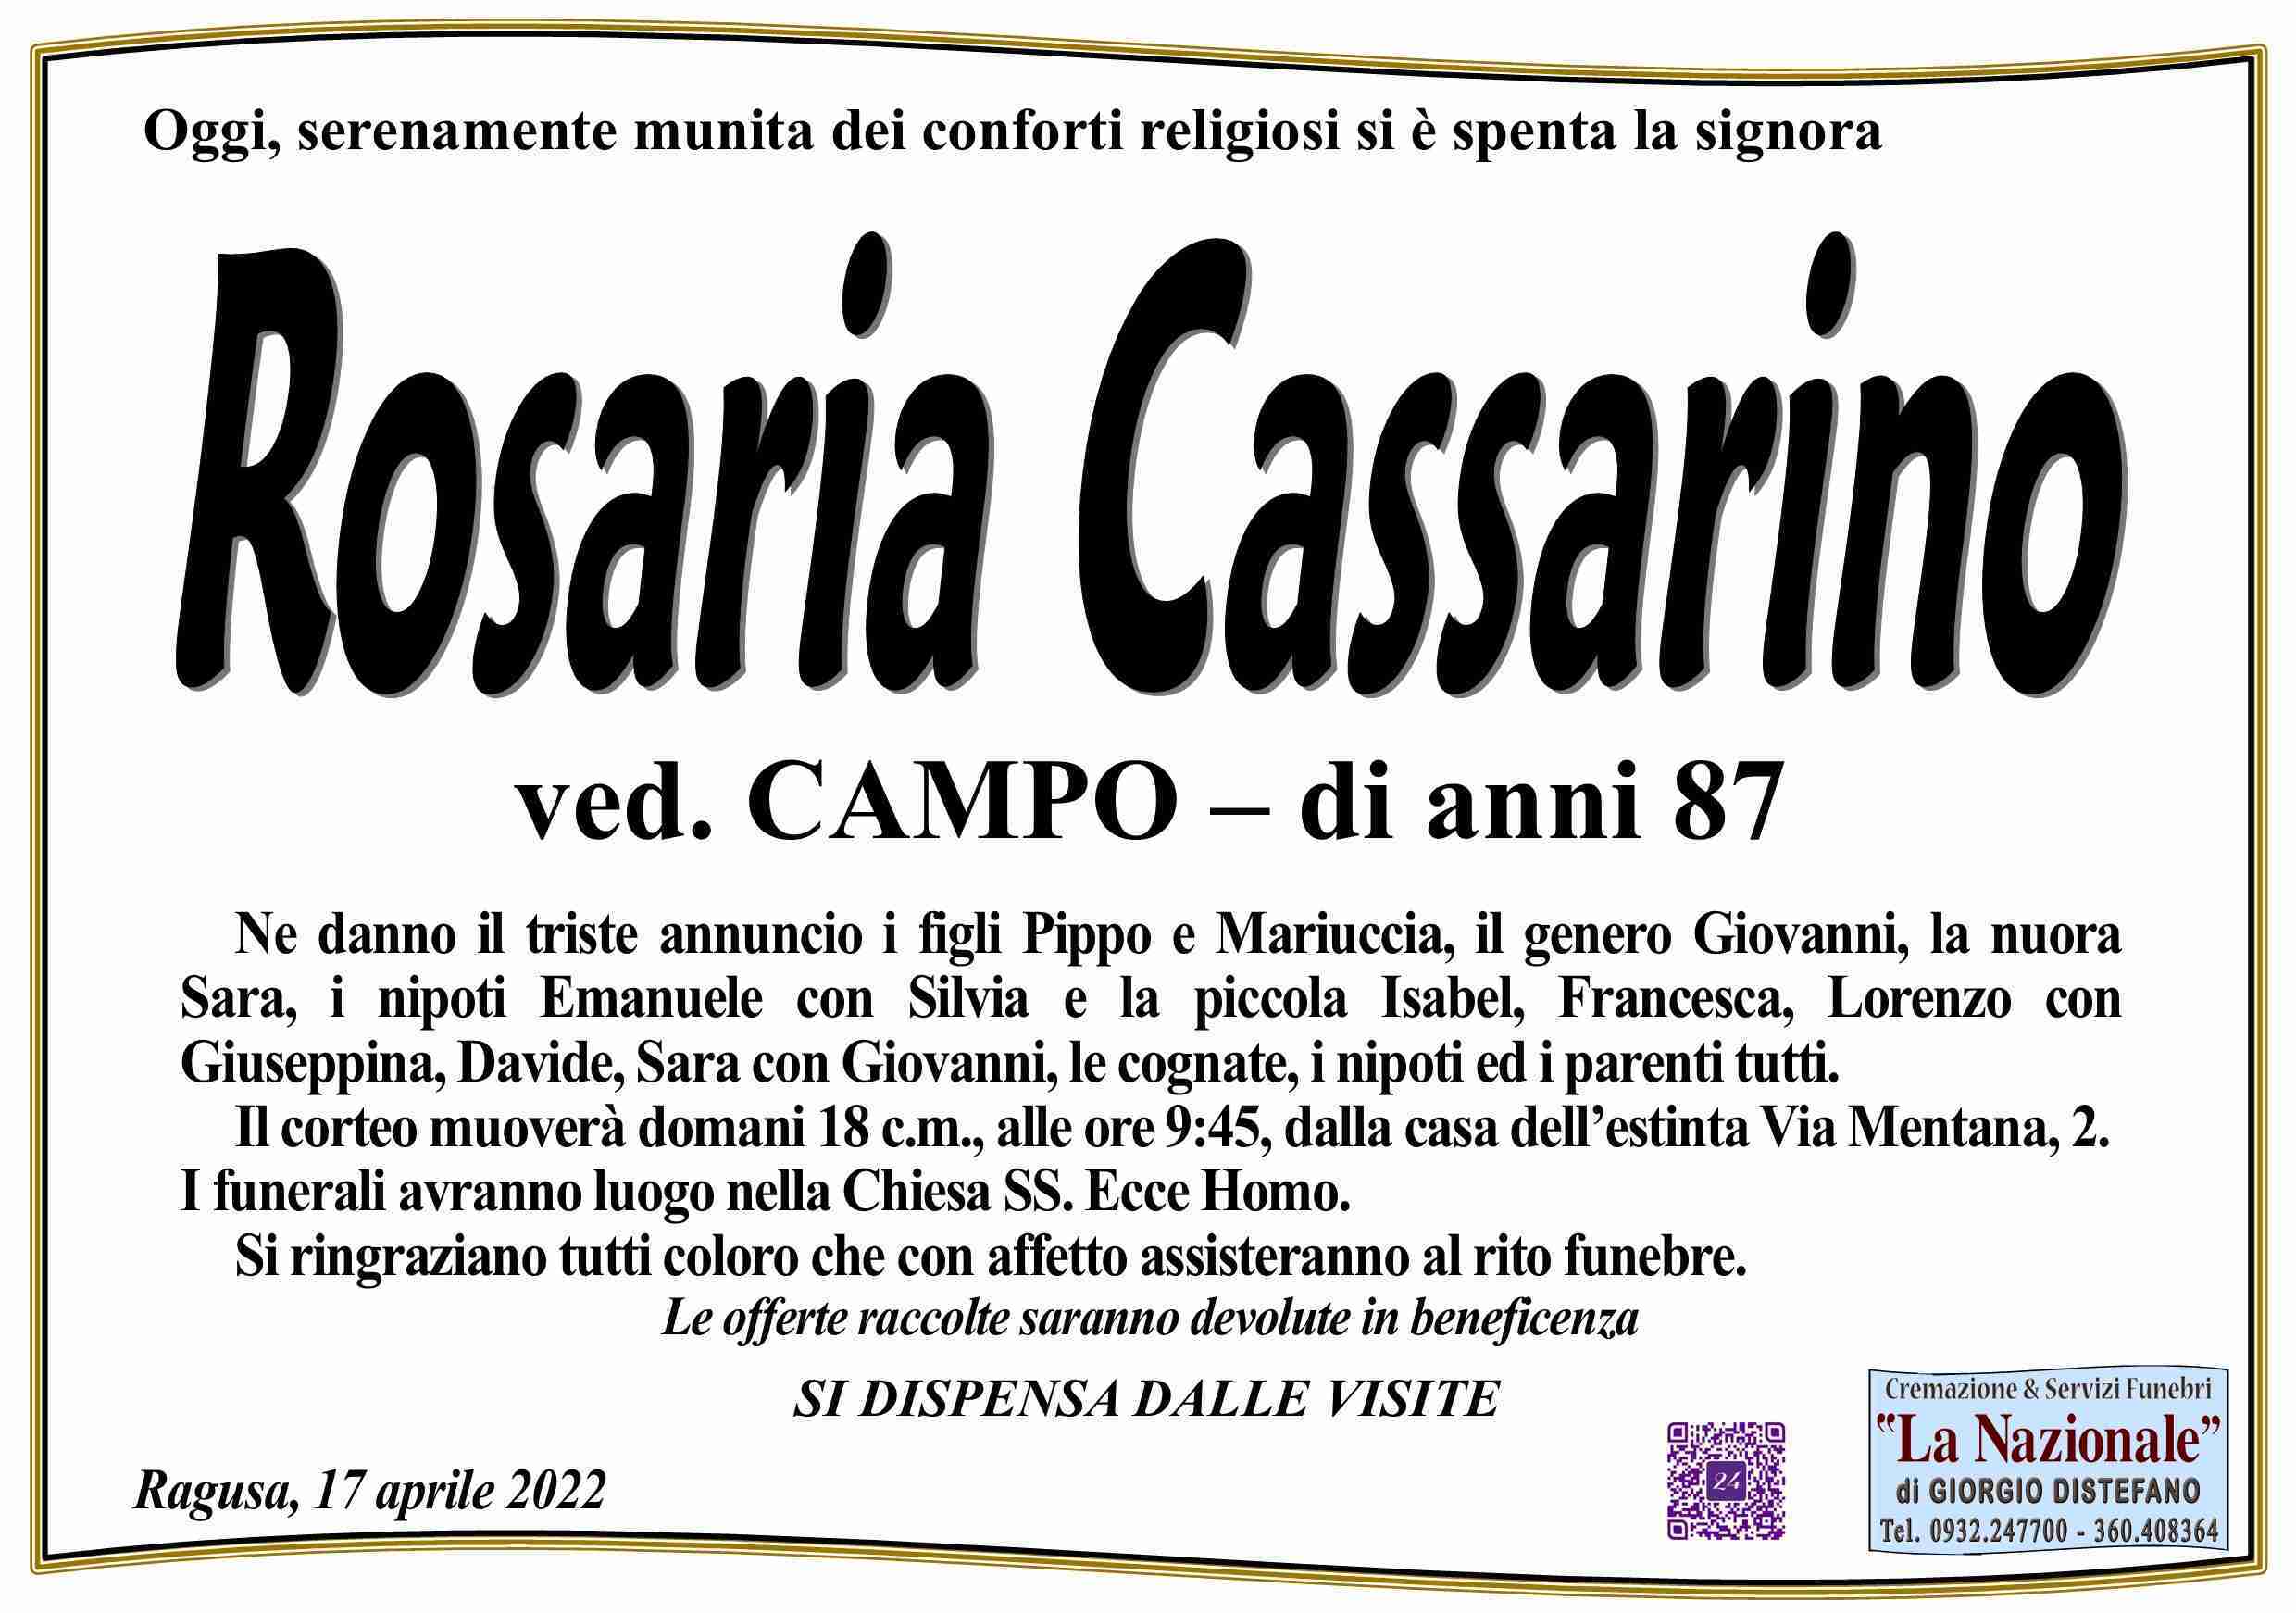 Rosaria Cassarino